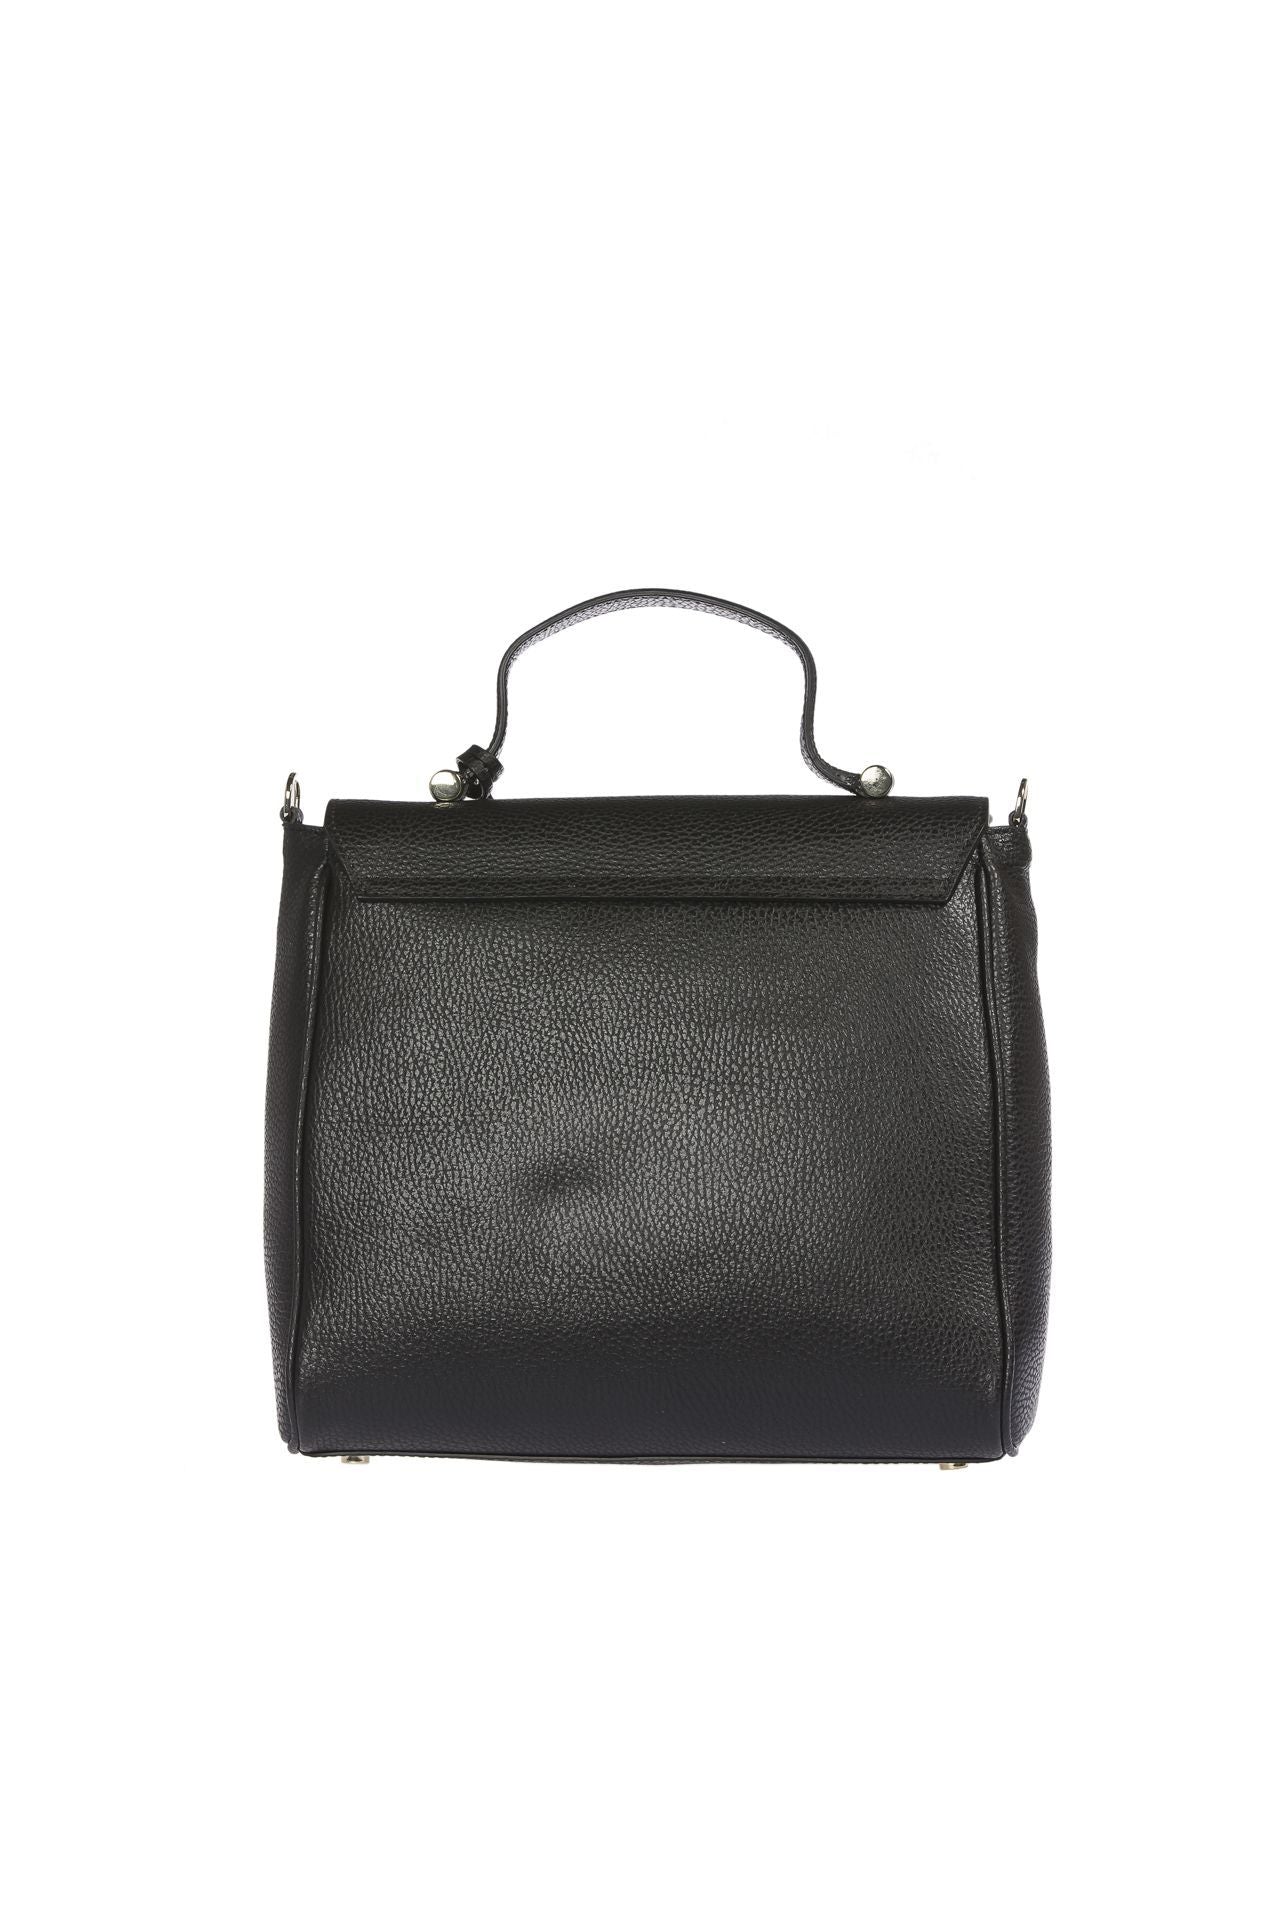 Embossed Leather Elegance Handbag